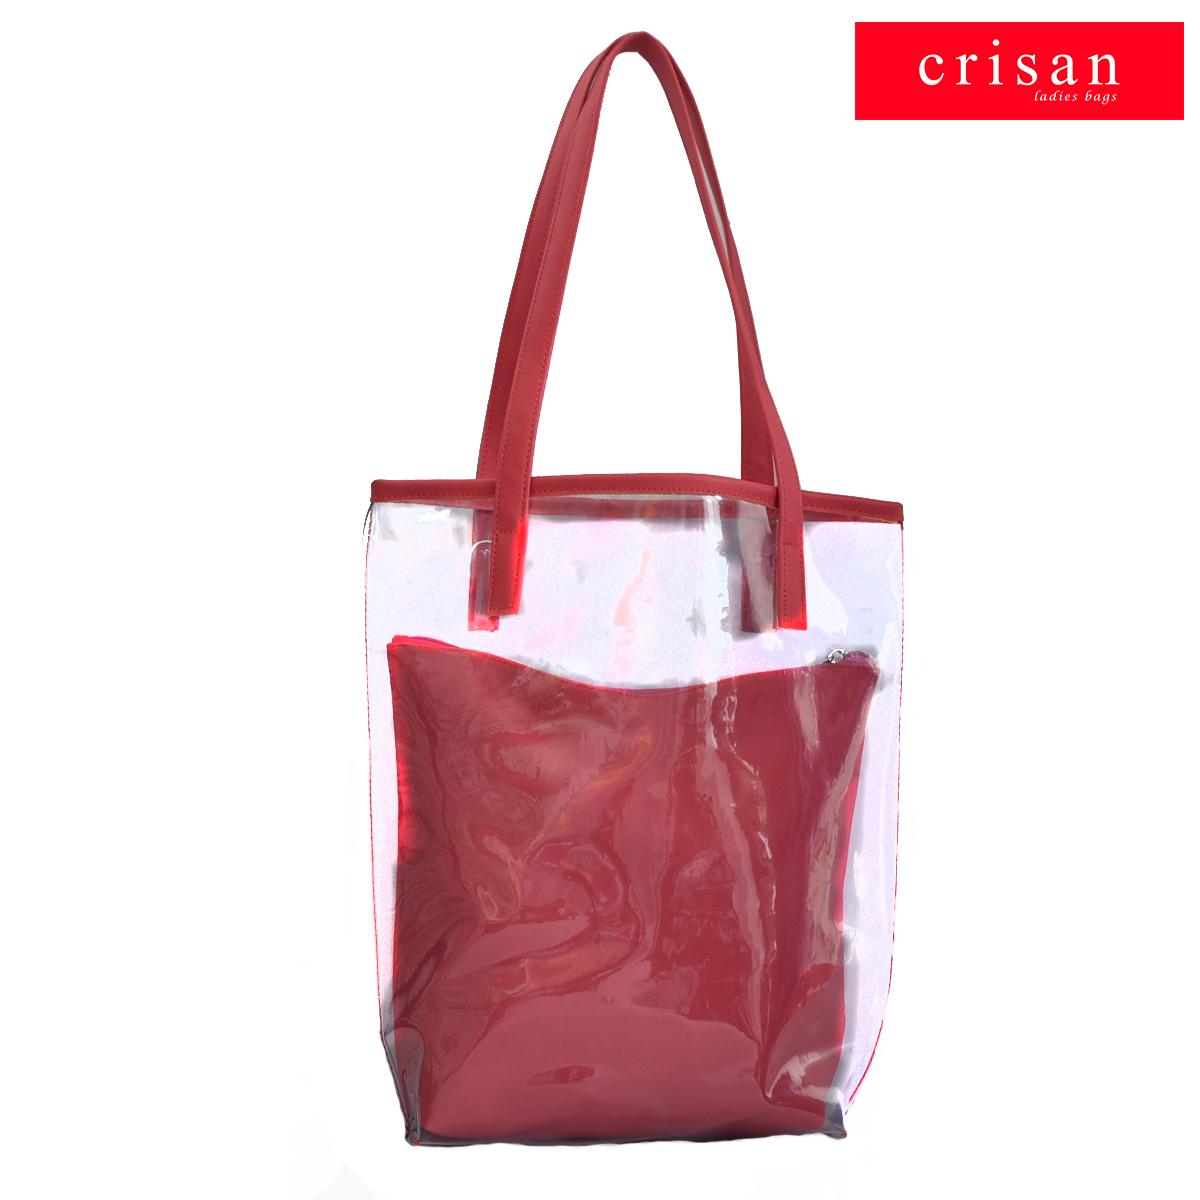 Crisan Bags - Jenna - Tote Bag-Crisan bags